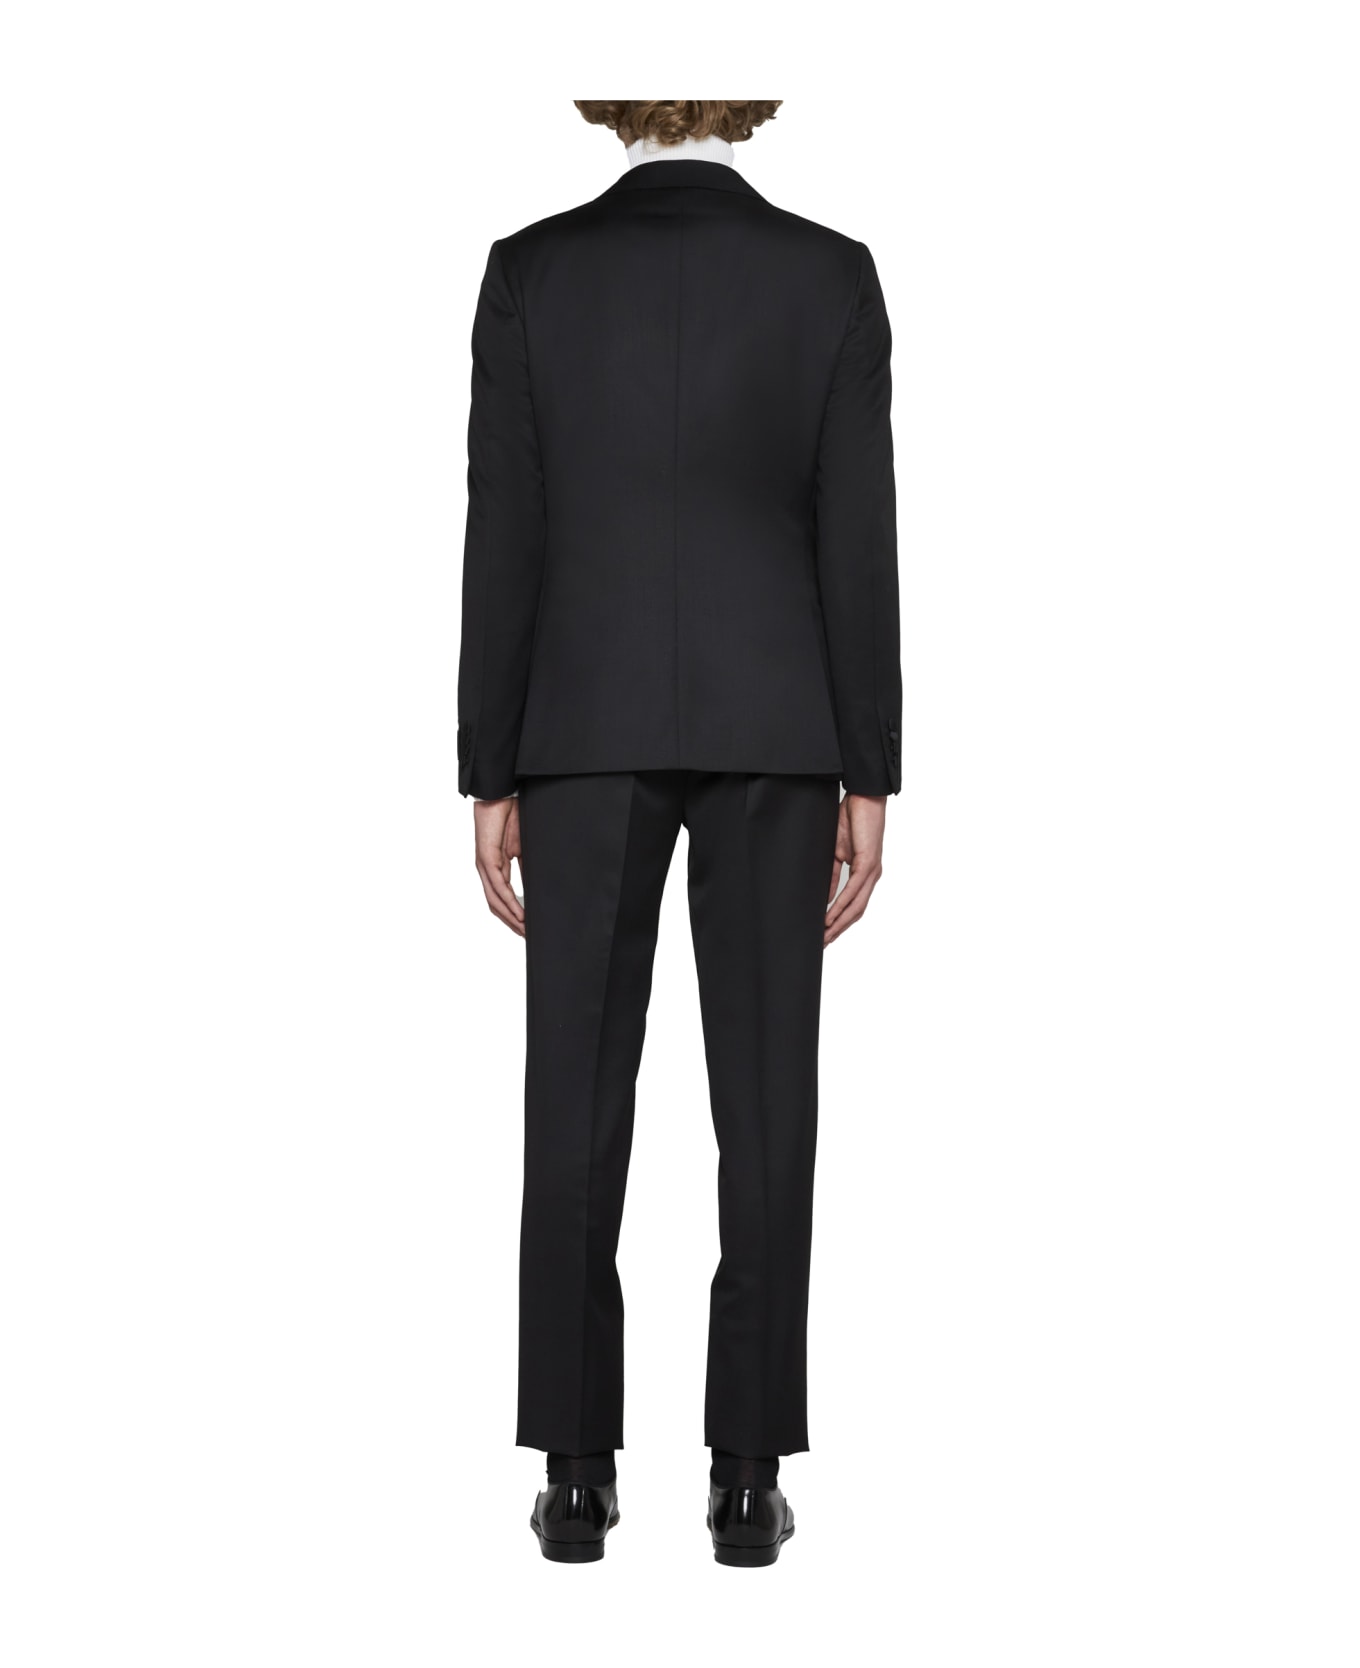 Zegna Suit - Black